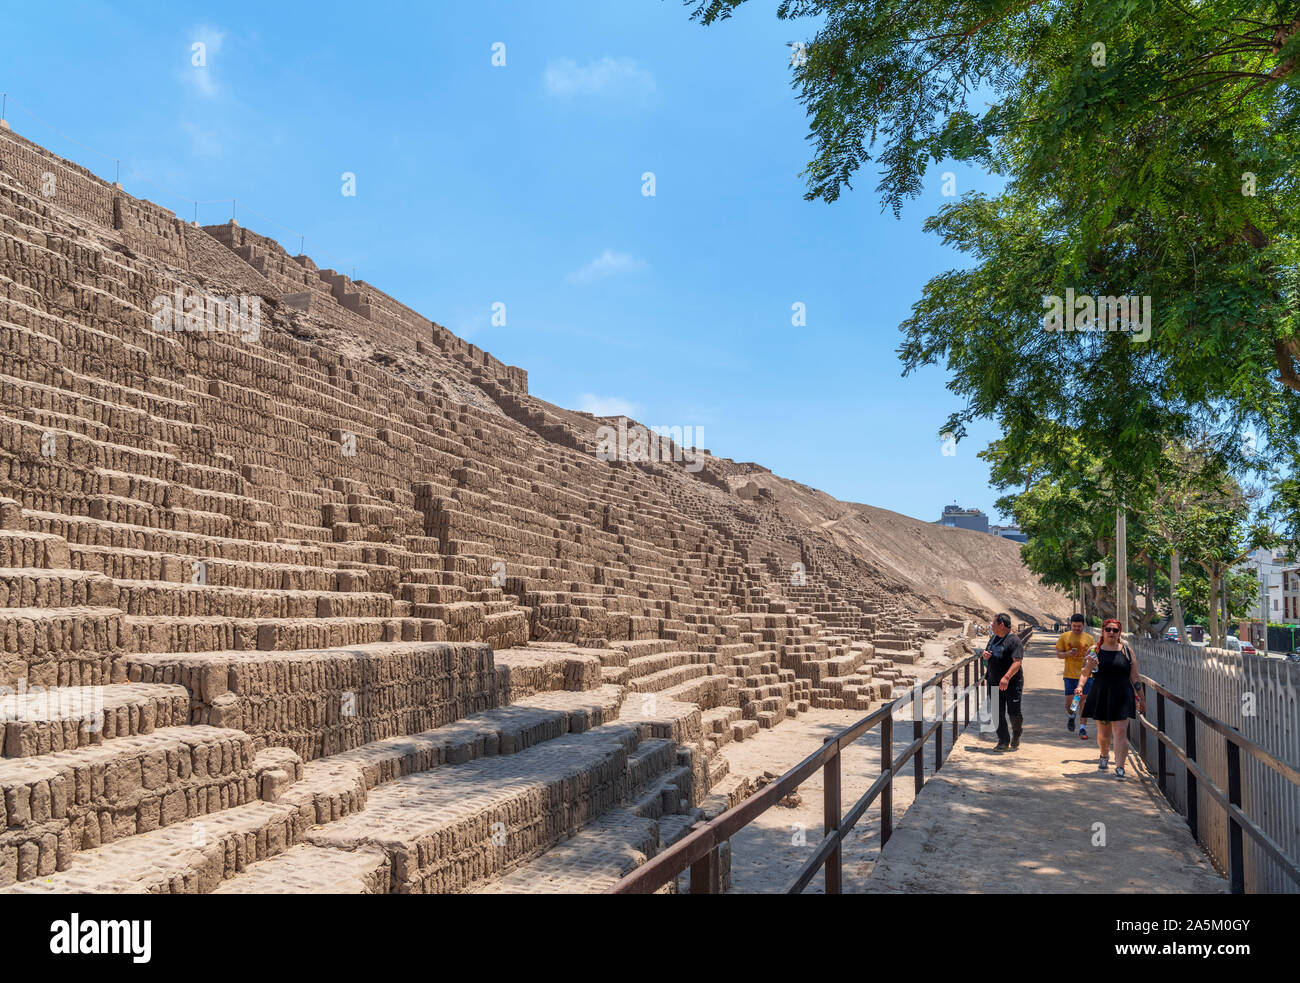 Les touristes à côté de la Grande Pyramide, datant d'environ 400 AD, Huaca Pucllana, Miraflores, Lima, Pérou, Amérique du Sud Banque D'Images